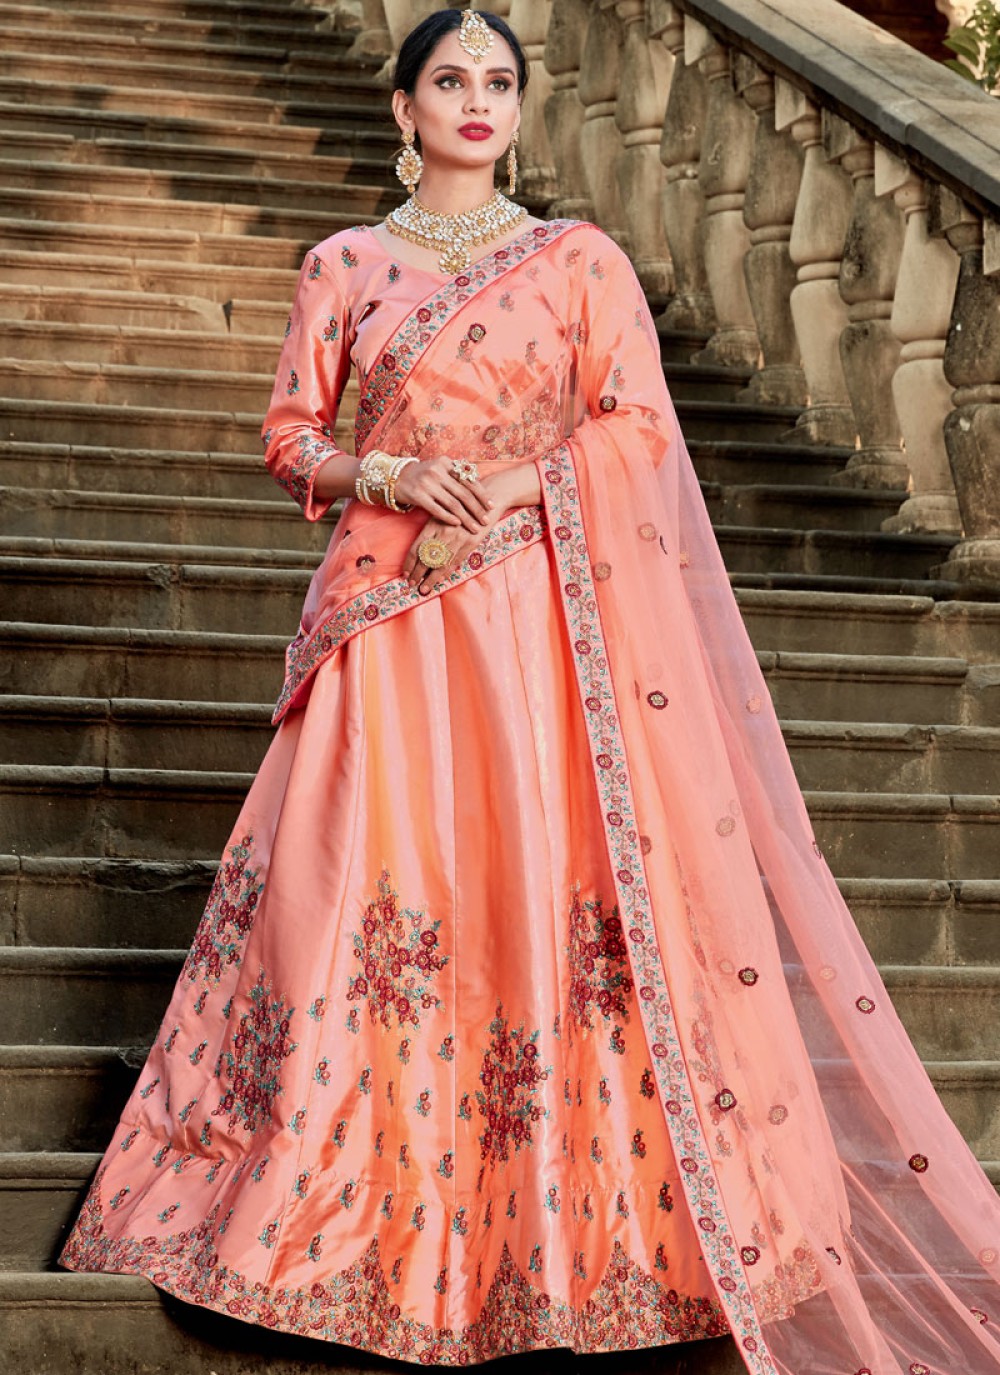 Buy Rani Pink Lehenga With Resham Embroidered Blouse KALKI Fashion India